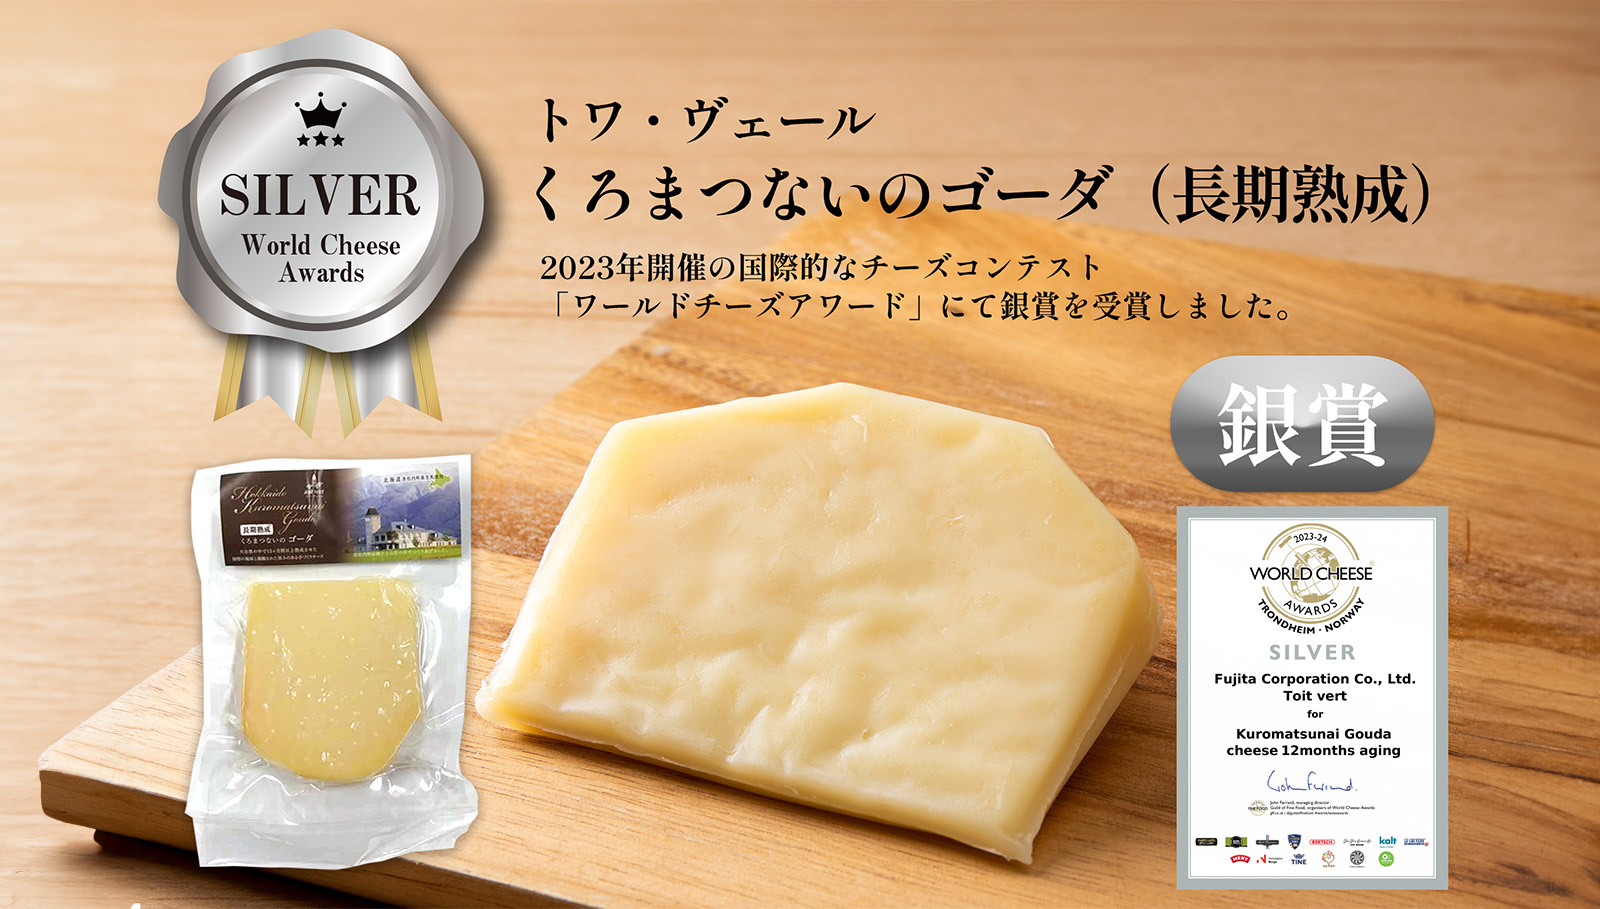 『World Cheese Awards2023』ワールドチーズアワード 銀賞受賞のお知らせ